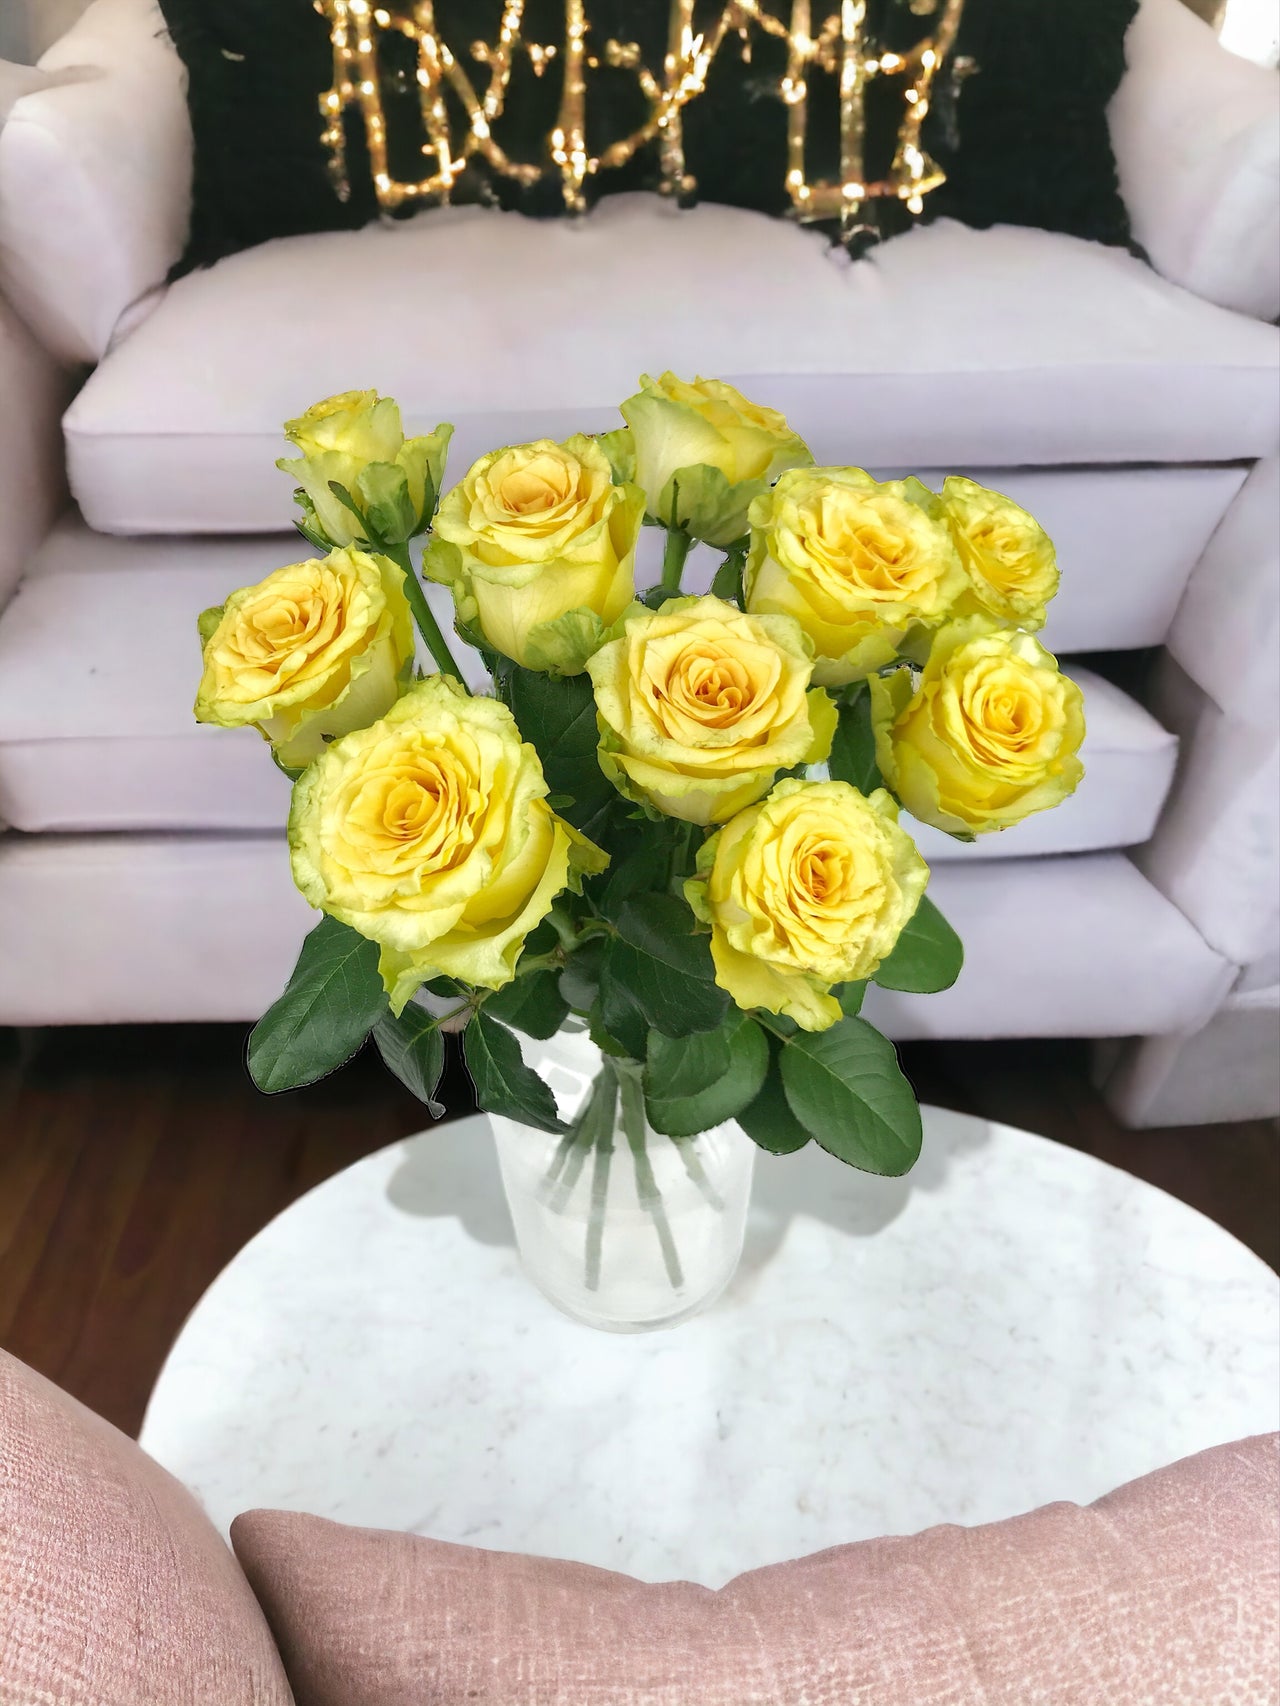 Bouquet de 10 Roses jaunes